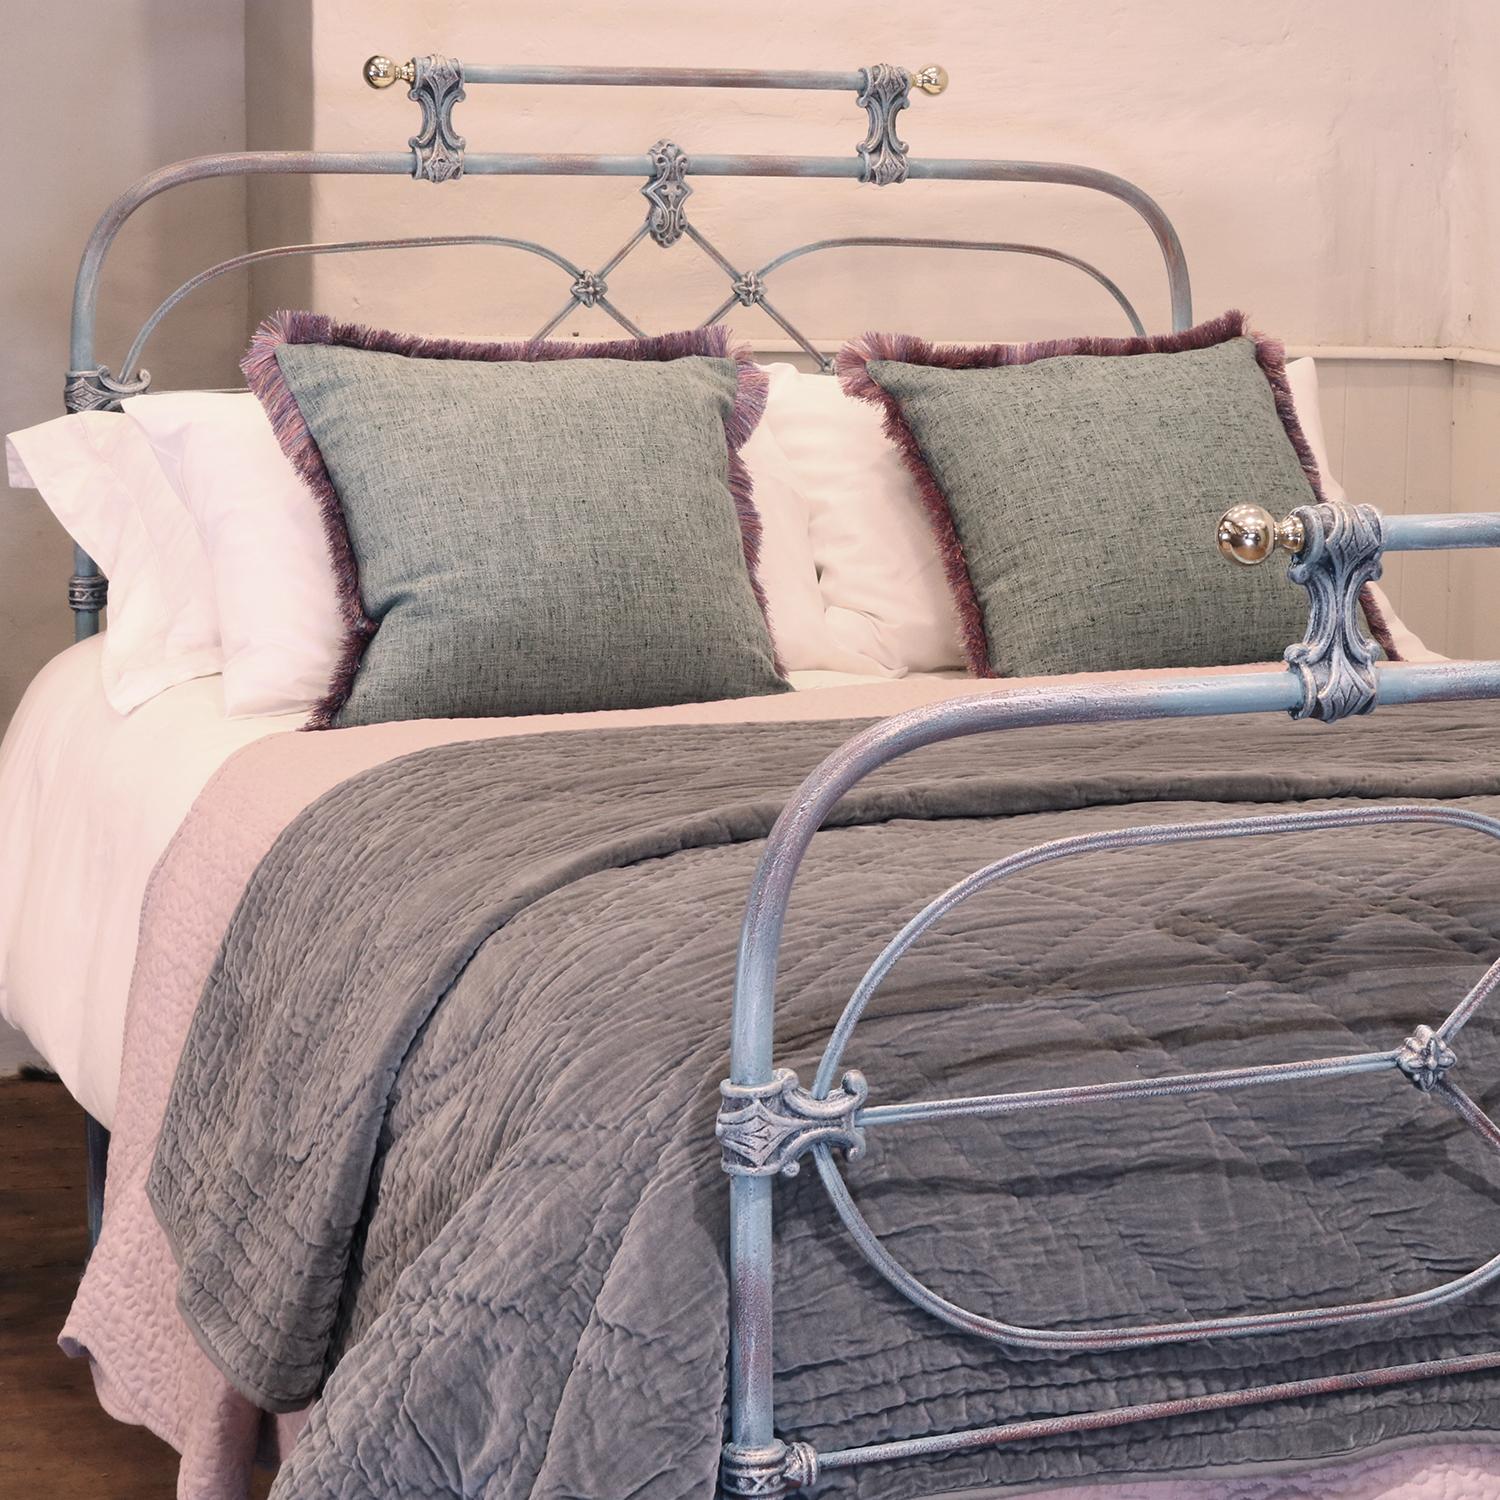 Antikes Bett aus Gusseisen in blauem Grünspan mit dekorativen Gussteilen, Galerieschiene und Messingknöpfen.

Dieses Bett ist für ein Doppelbett mit einer Breite von 54 Zoll (135 cm) und einer Matratze geeignet. 

Im Preis inbegriffen ist ein